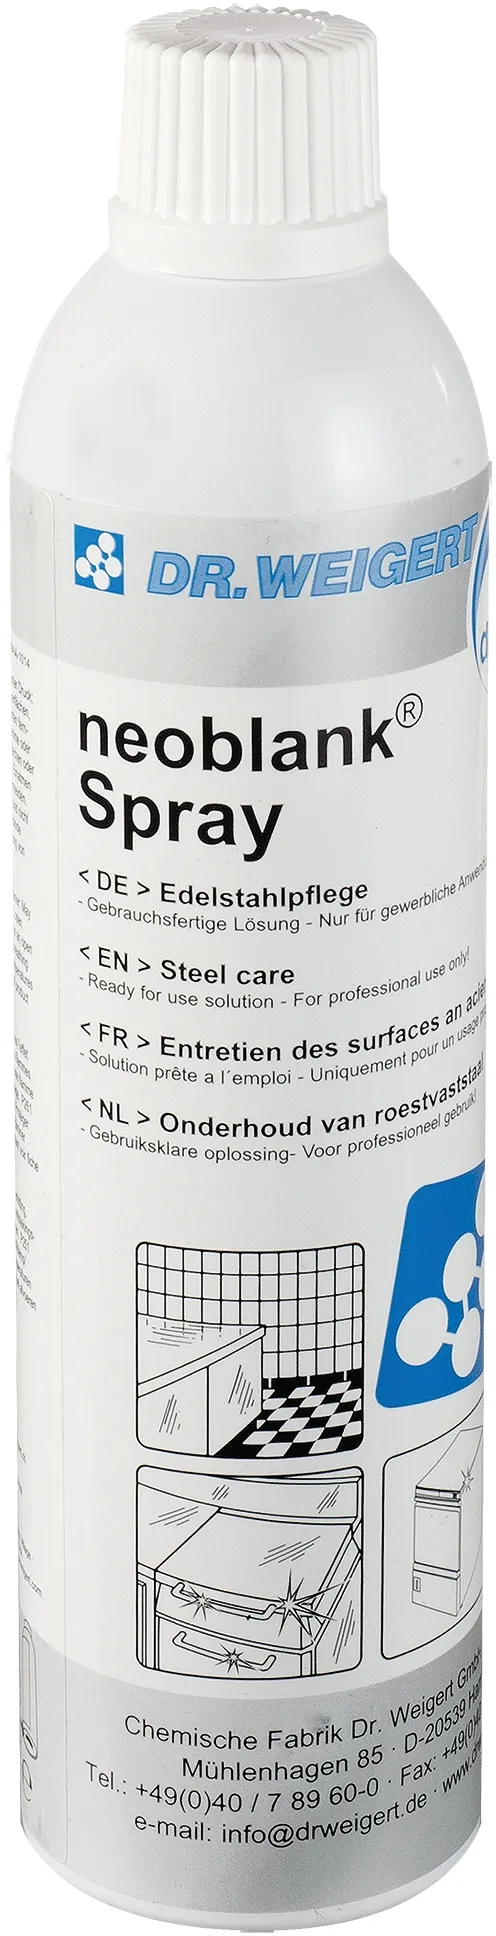 GASTRO STAR Dr. Weigert neoblank® Edelstahlreiniger Spray 400 ml gebrauchsfertig